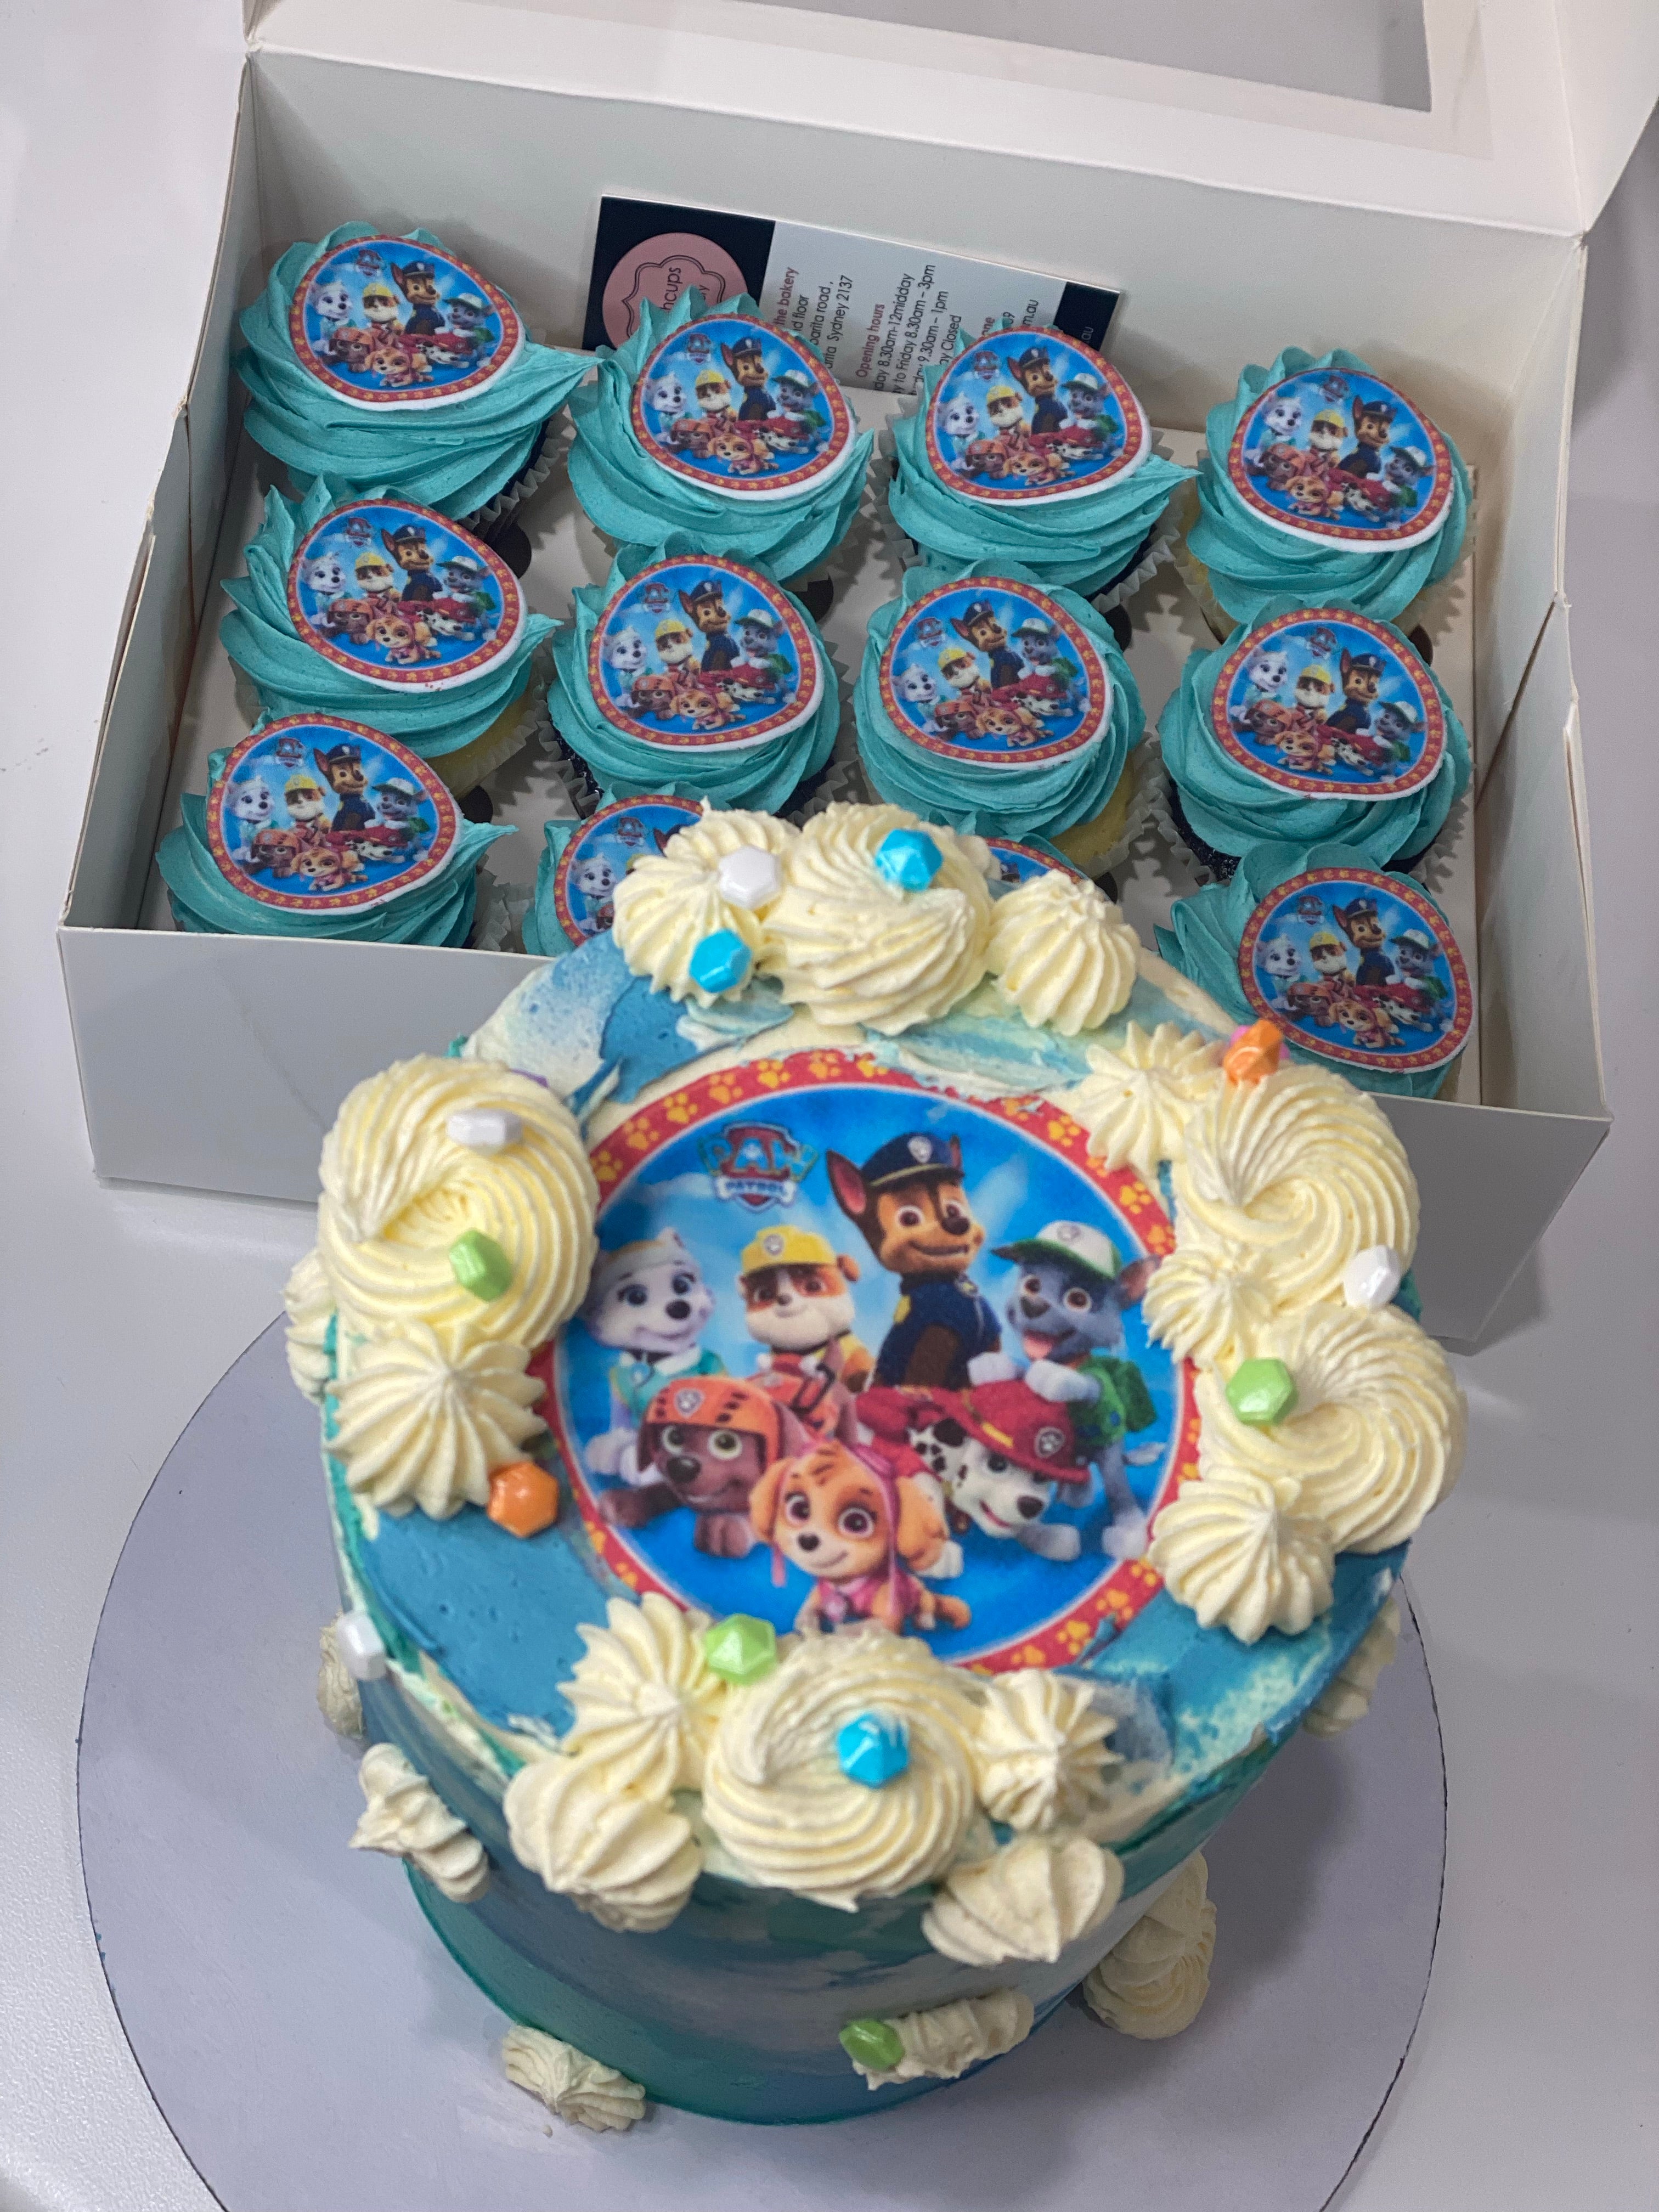 PAW PATROL IMAGE 4” CAKE +  cupcakes (12 mini )